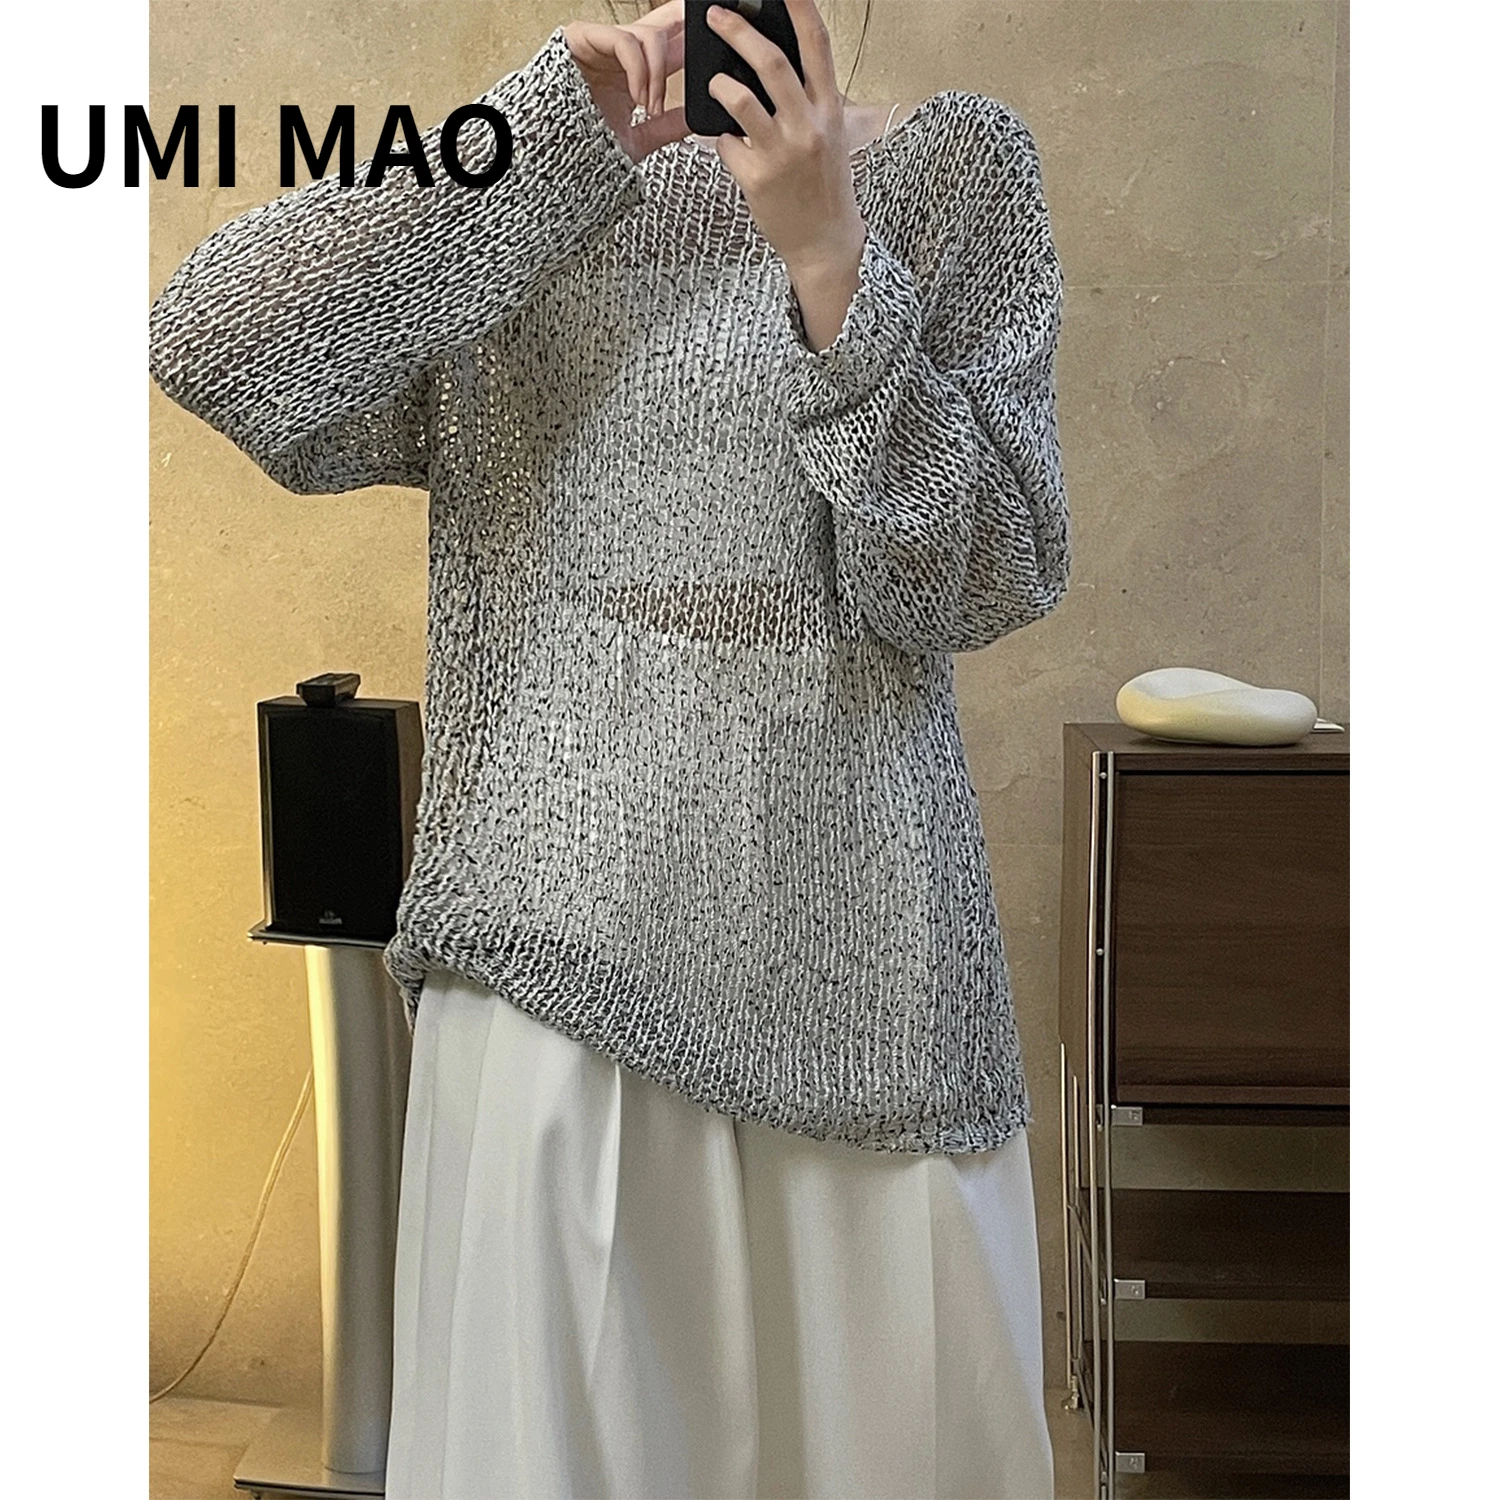 

Женская трикотажная блузка UMI MAO, тонкая свободная тонкая воздухопроницаемая Повседневная Блузка в Корейском стиле, весна-лето